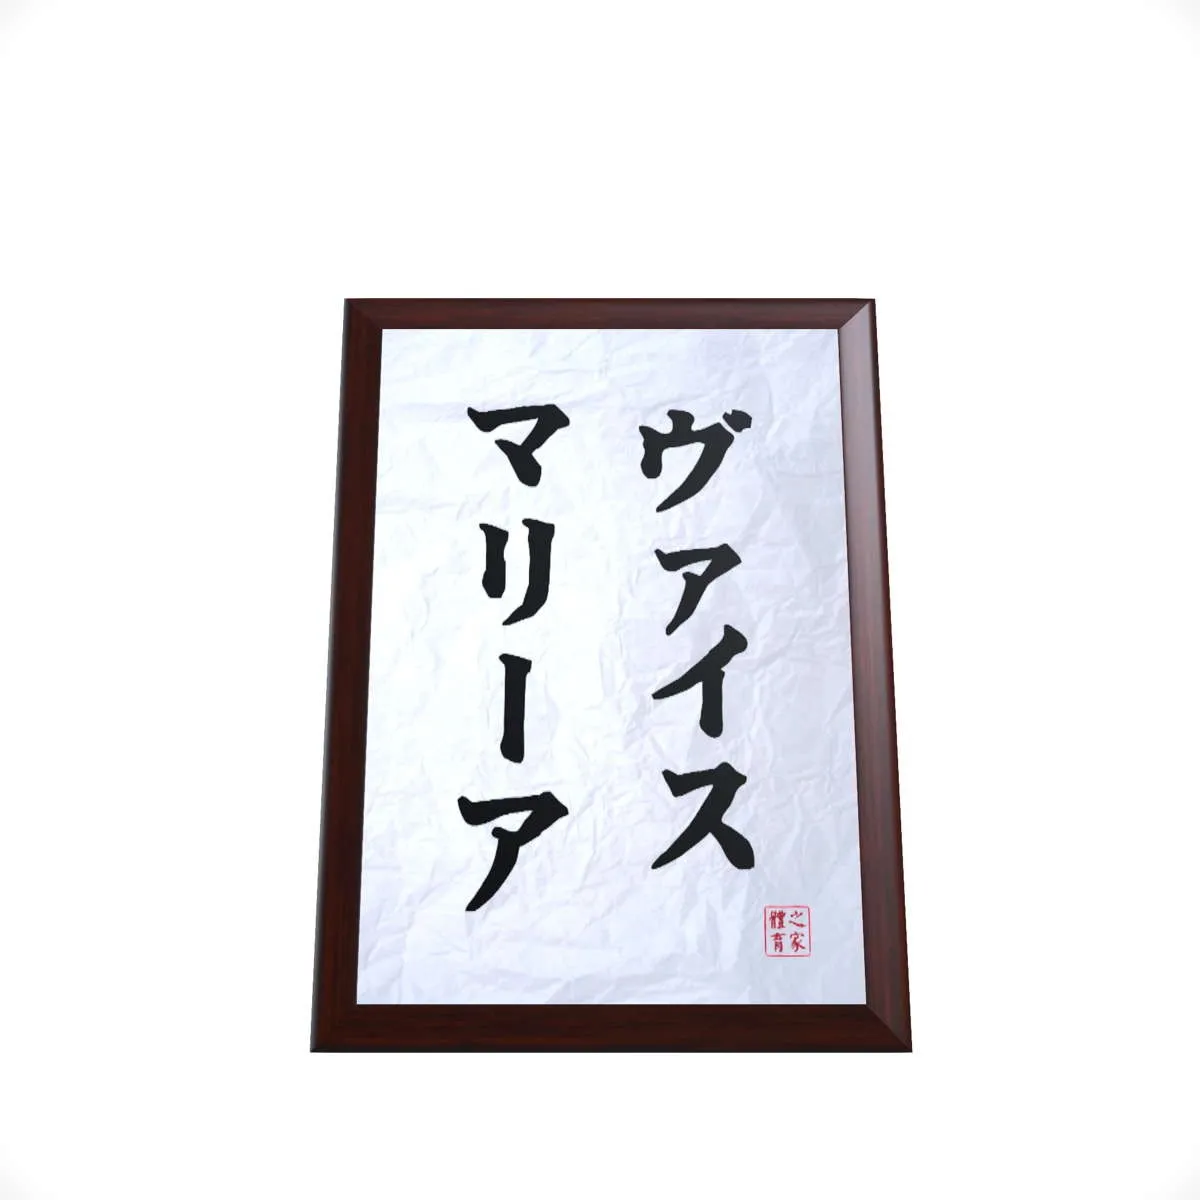 Holztafel mit Name in japanischen Schriftzeichen | bedruckte Ehrentafel